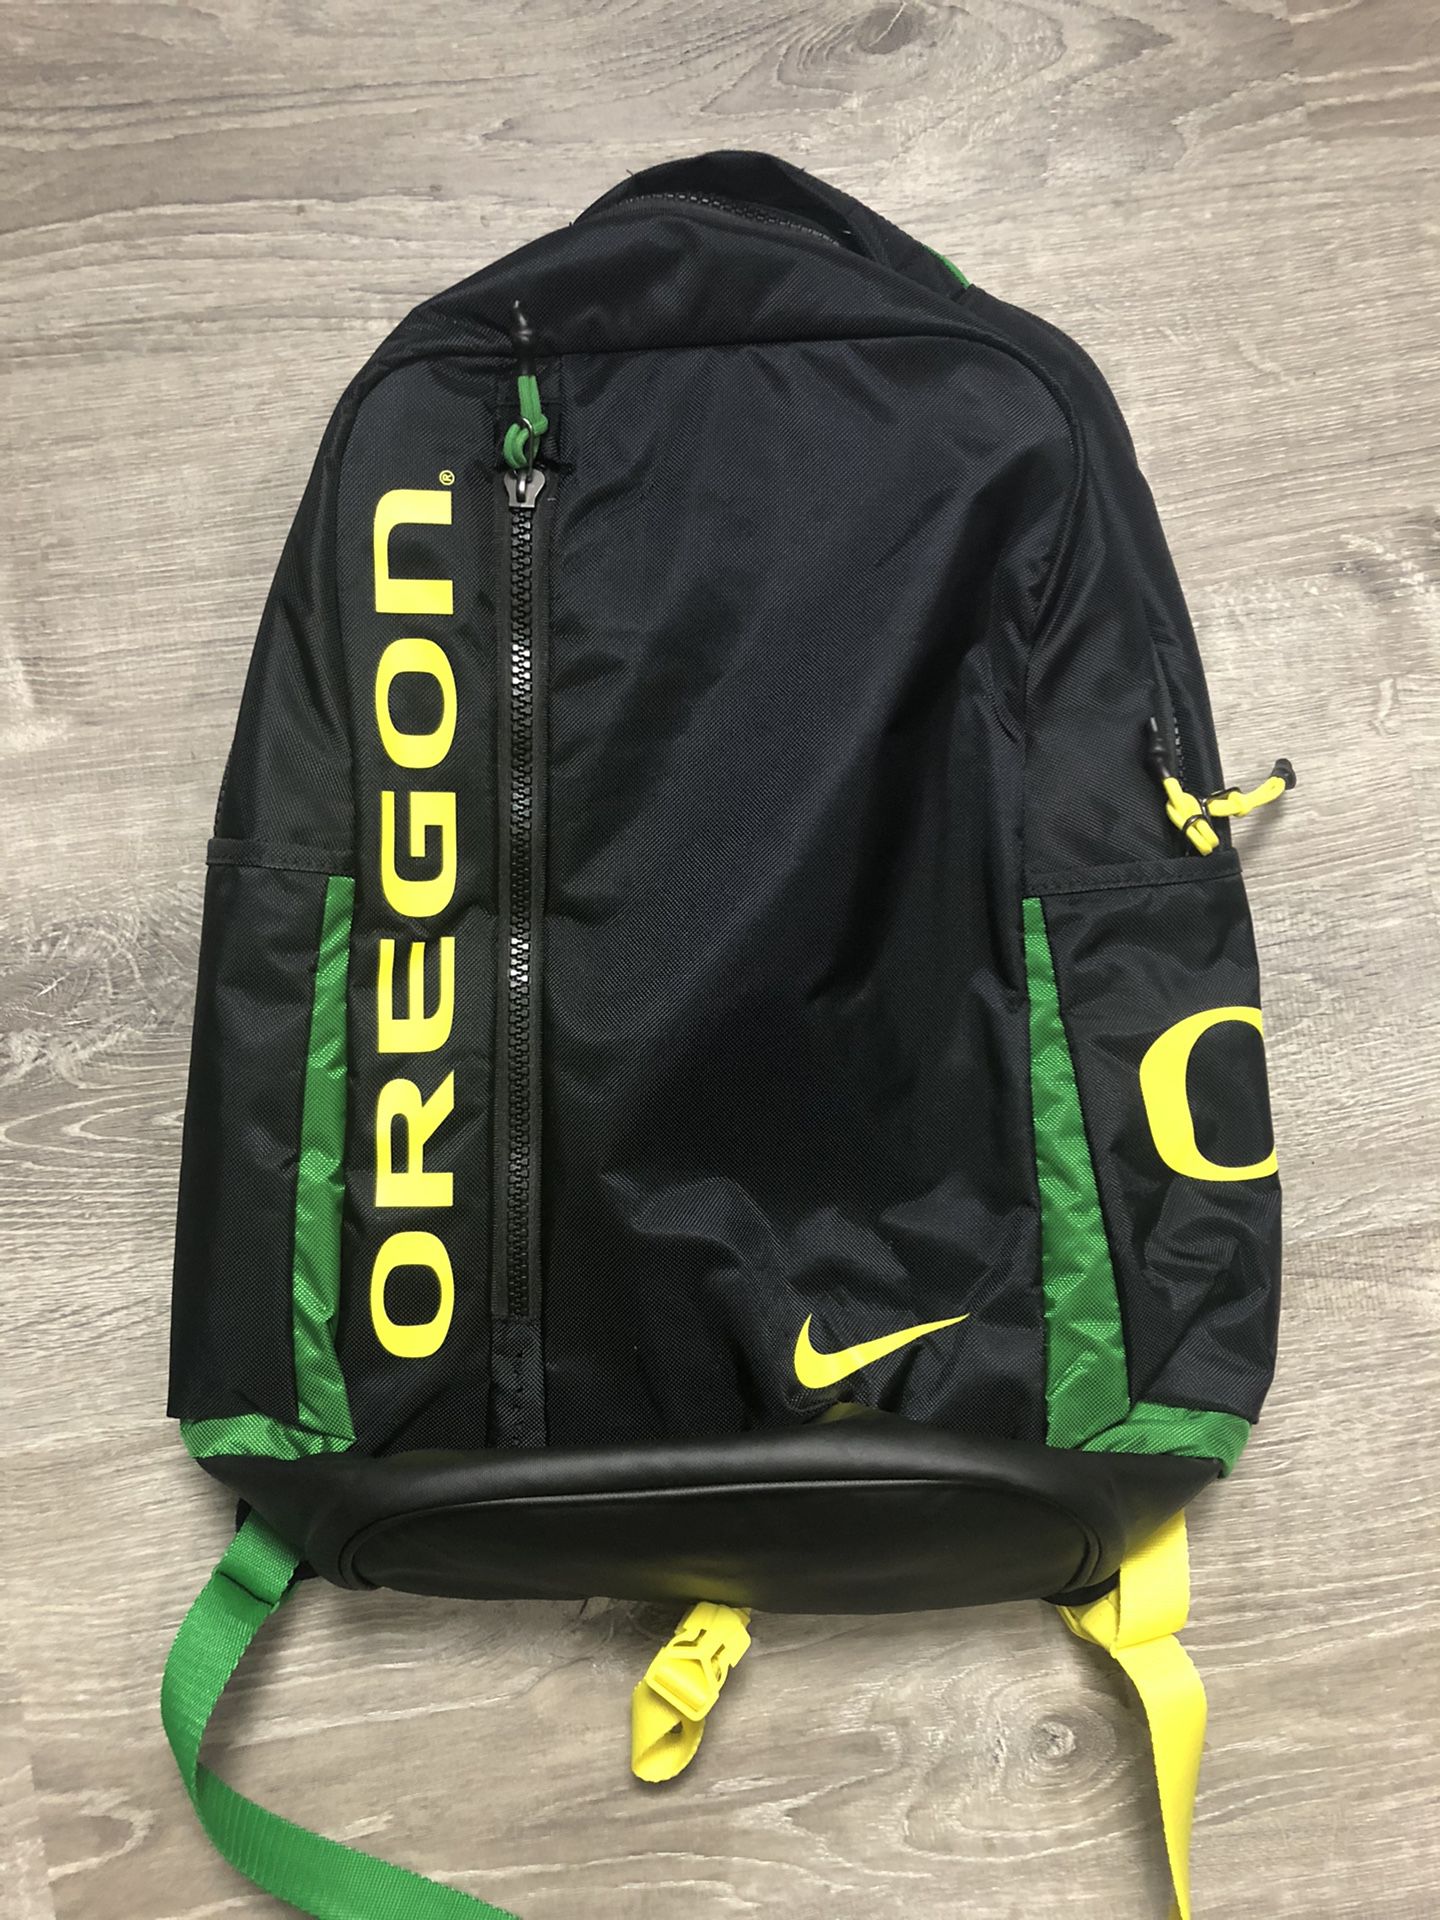 New Oregon Ducks Nike Backpack